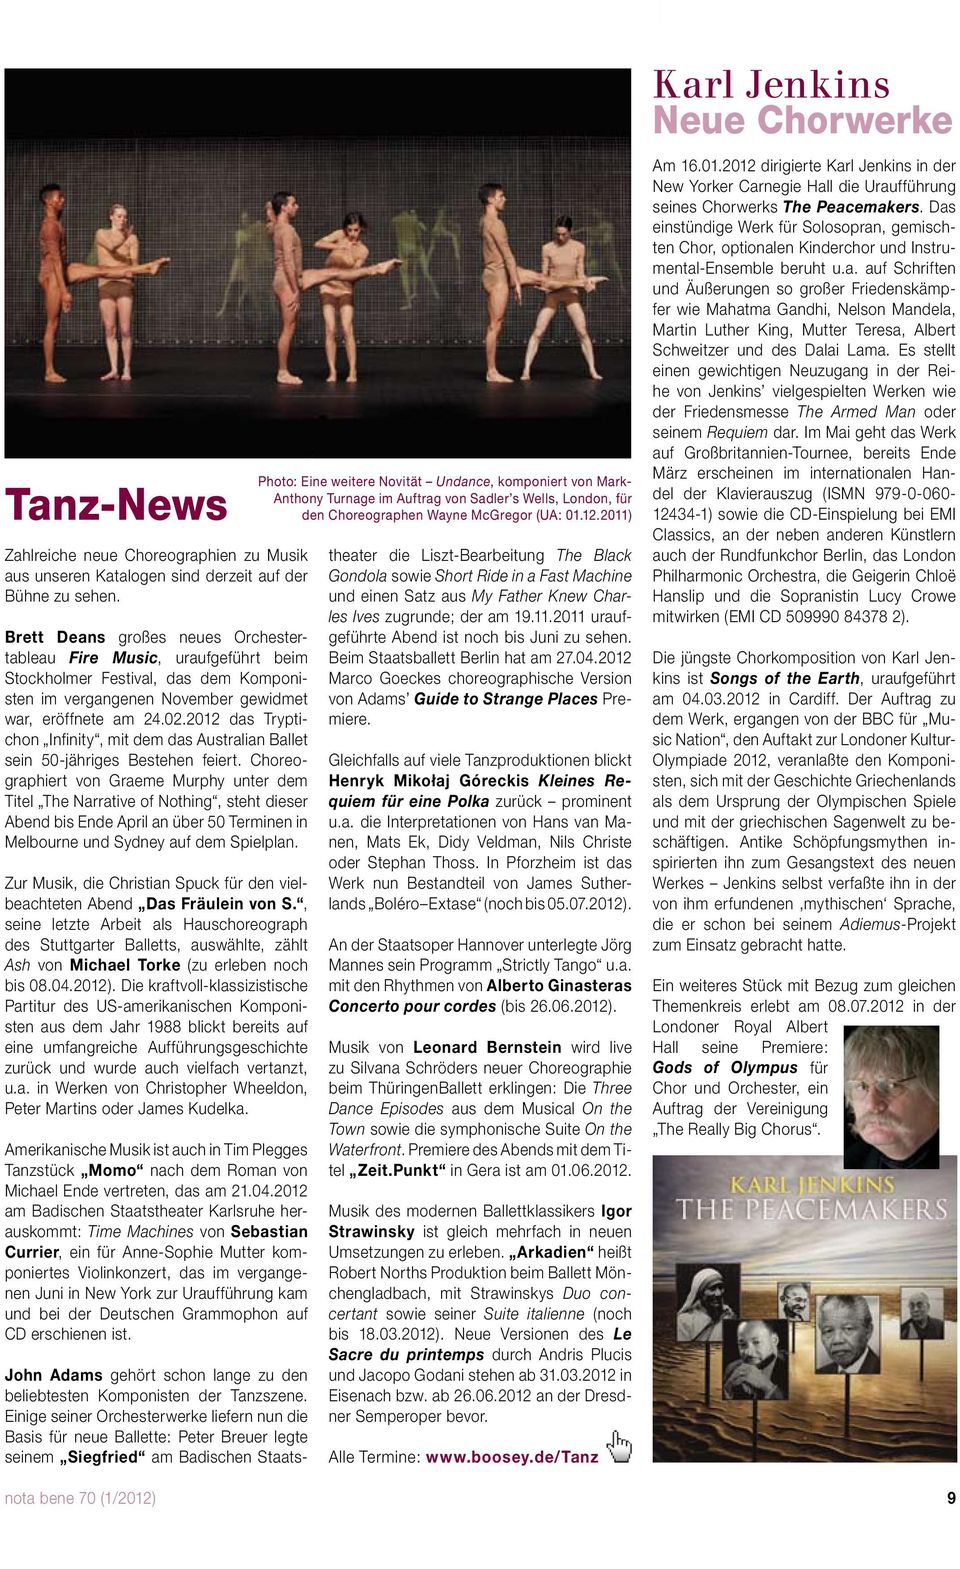 2012 das Tryptichon Infinity, mit dem das Australian Ballet sein 50-jähriges Bestehen feiert.